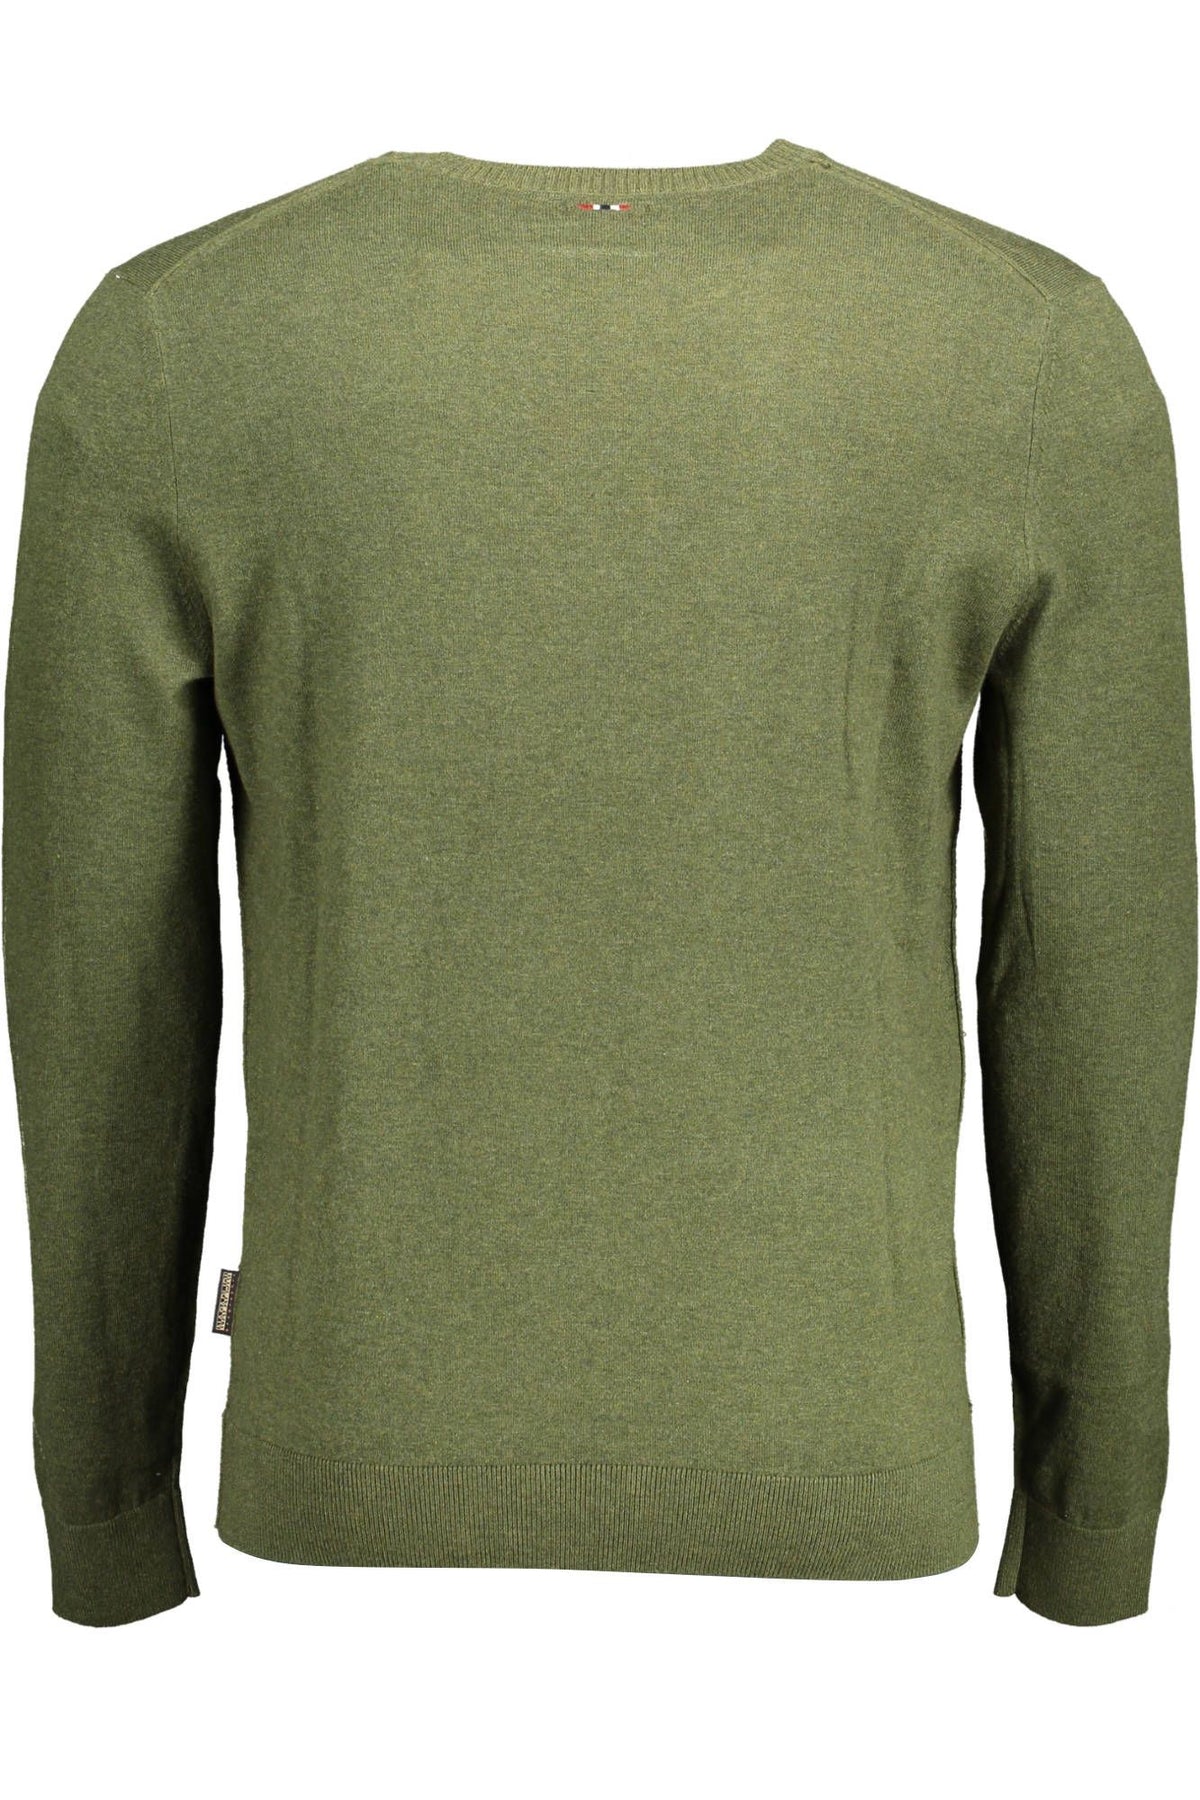 Napapijri – Smaragdgrüner Pullover mit Rundhalsausschnitt und Stickerei